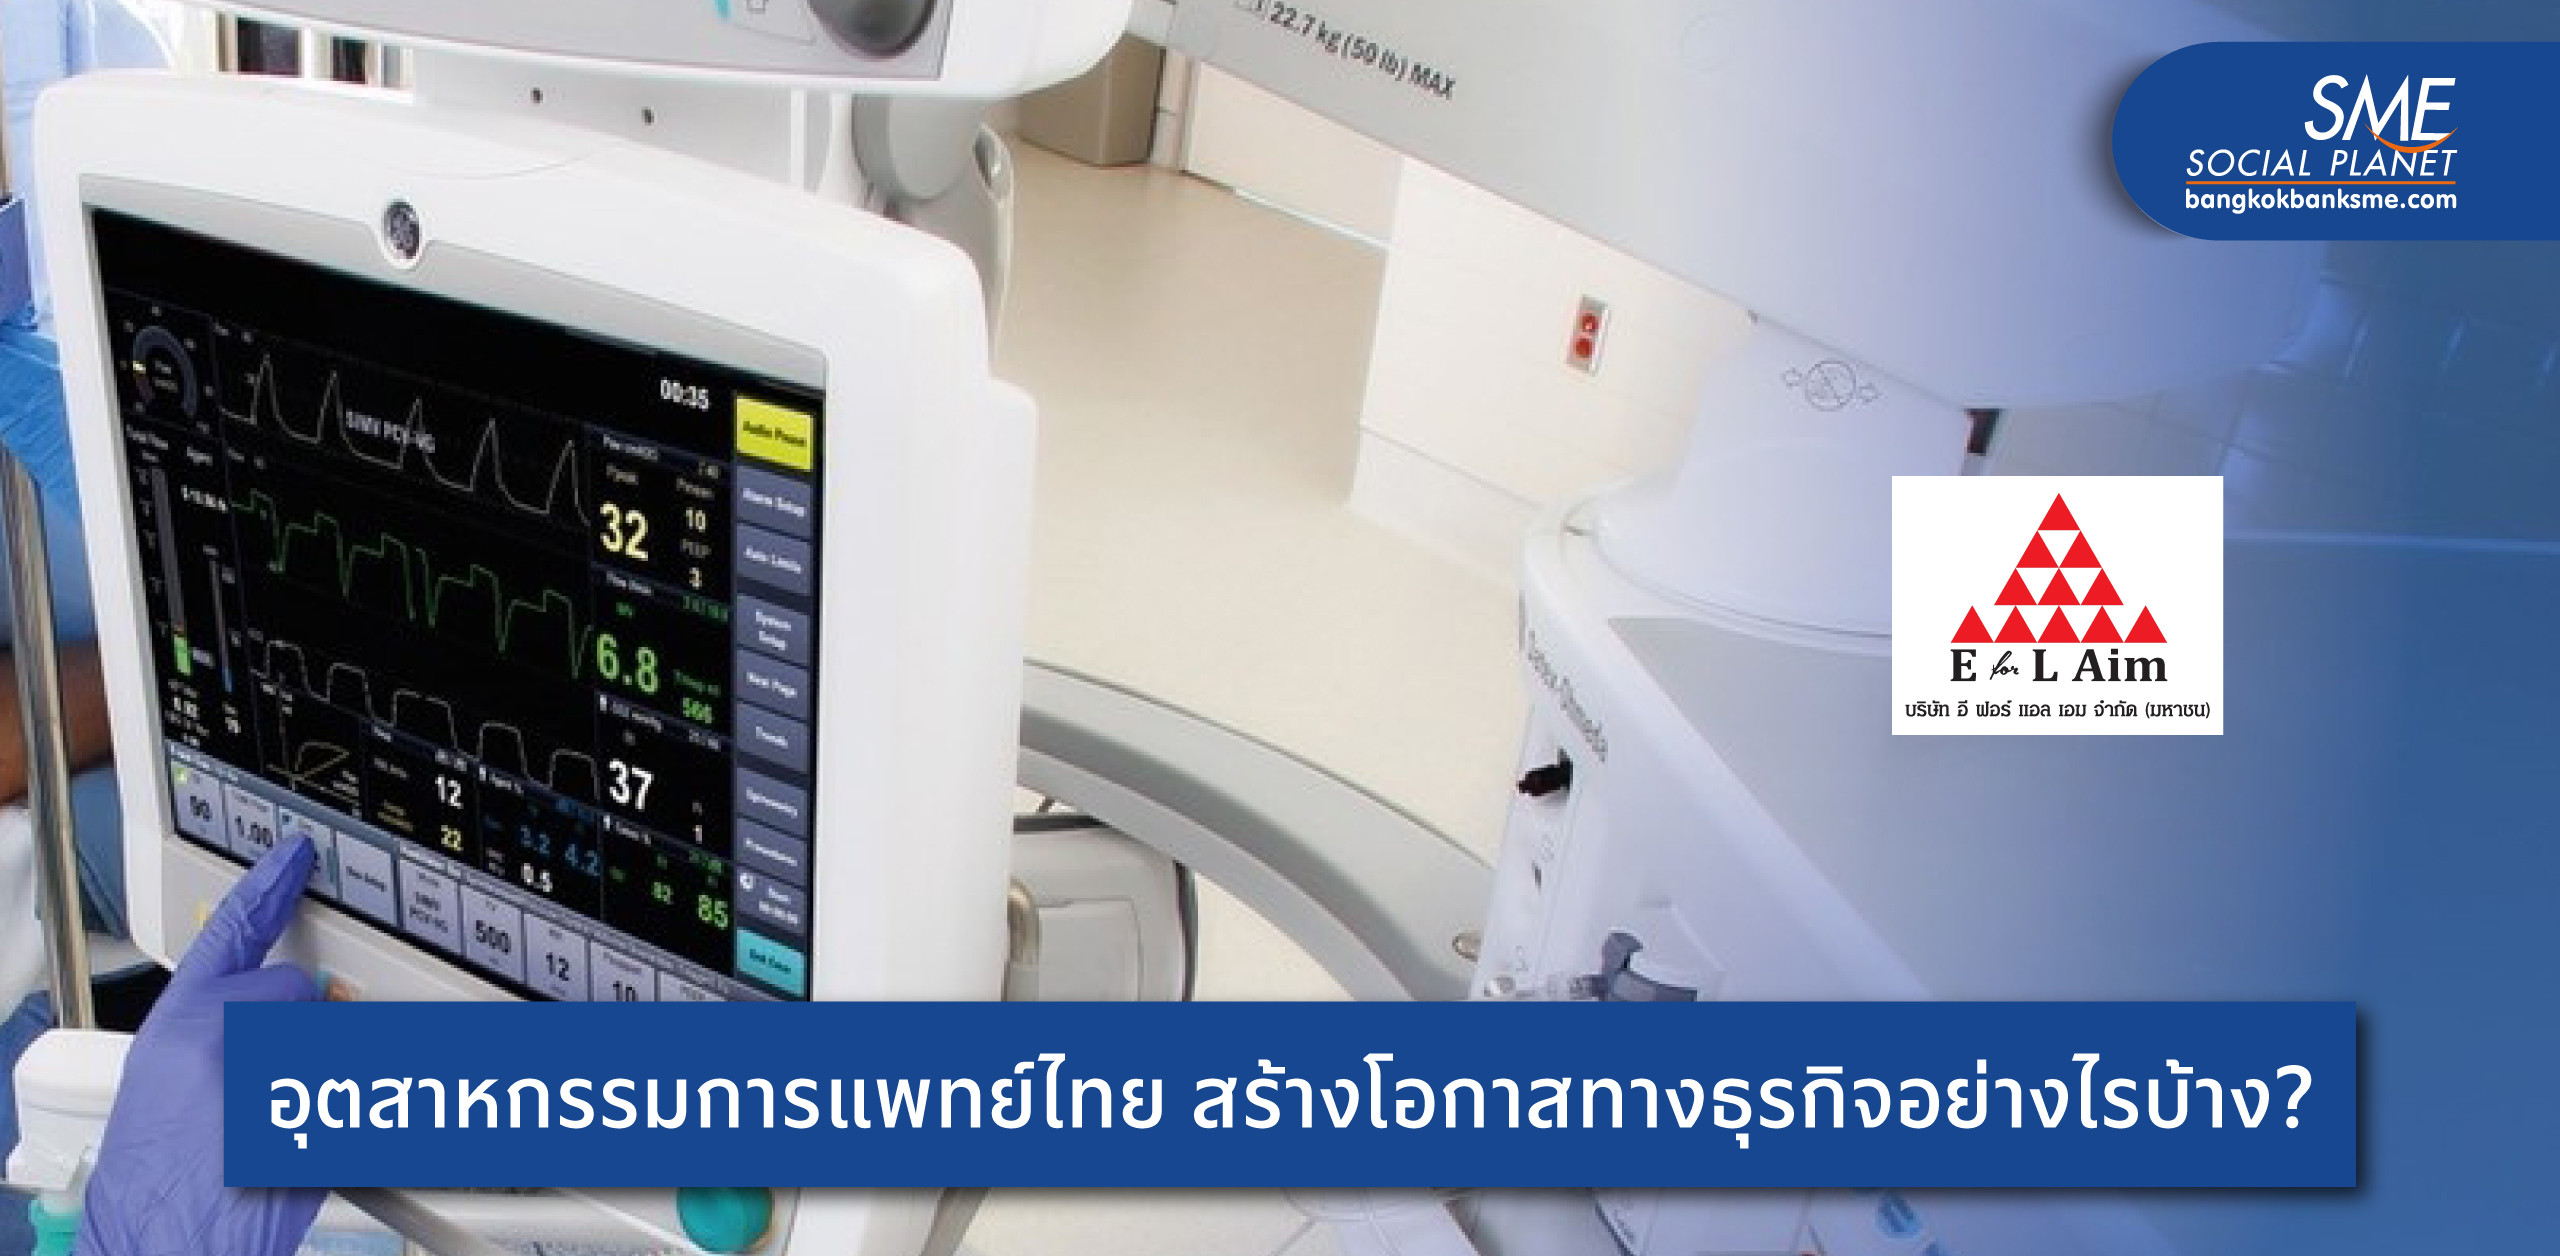 ถอดรหัสความสำเร็จ ‘อี ฟอร์ แอล เอม’ ผู้นำเข้าอุปกรณ์ทางการแพทย์ระดับโลกสู่การซัพพอร์ตสาธารณสุขไทย